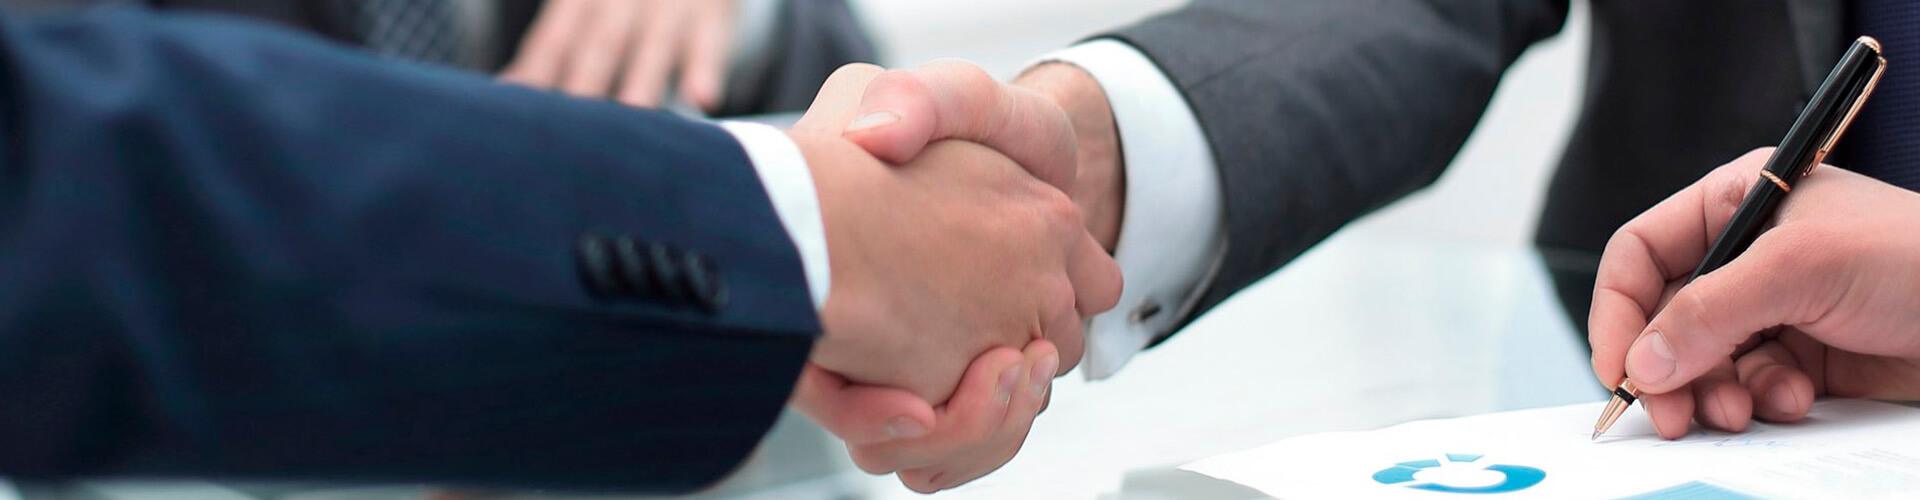 Préstamo Empresas - Dos hombre se dan la mano en una reunión en la oficina